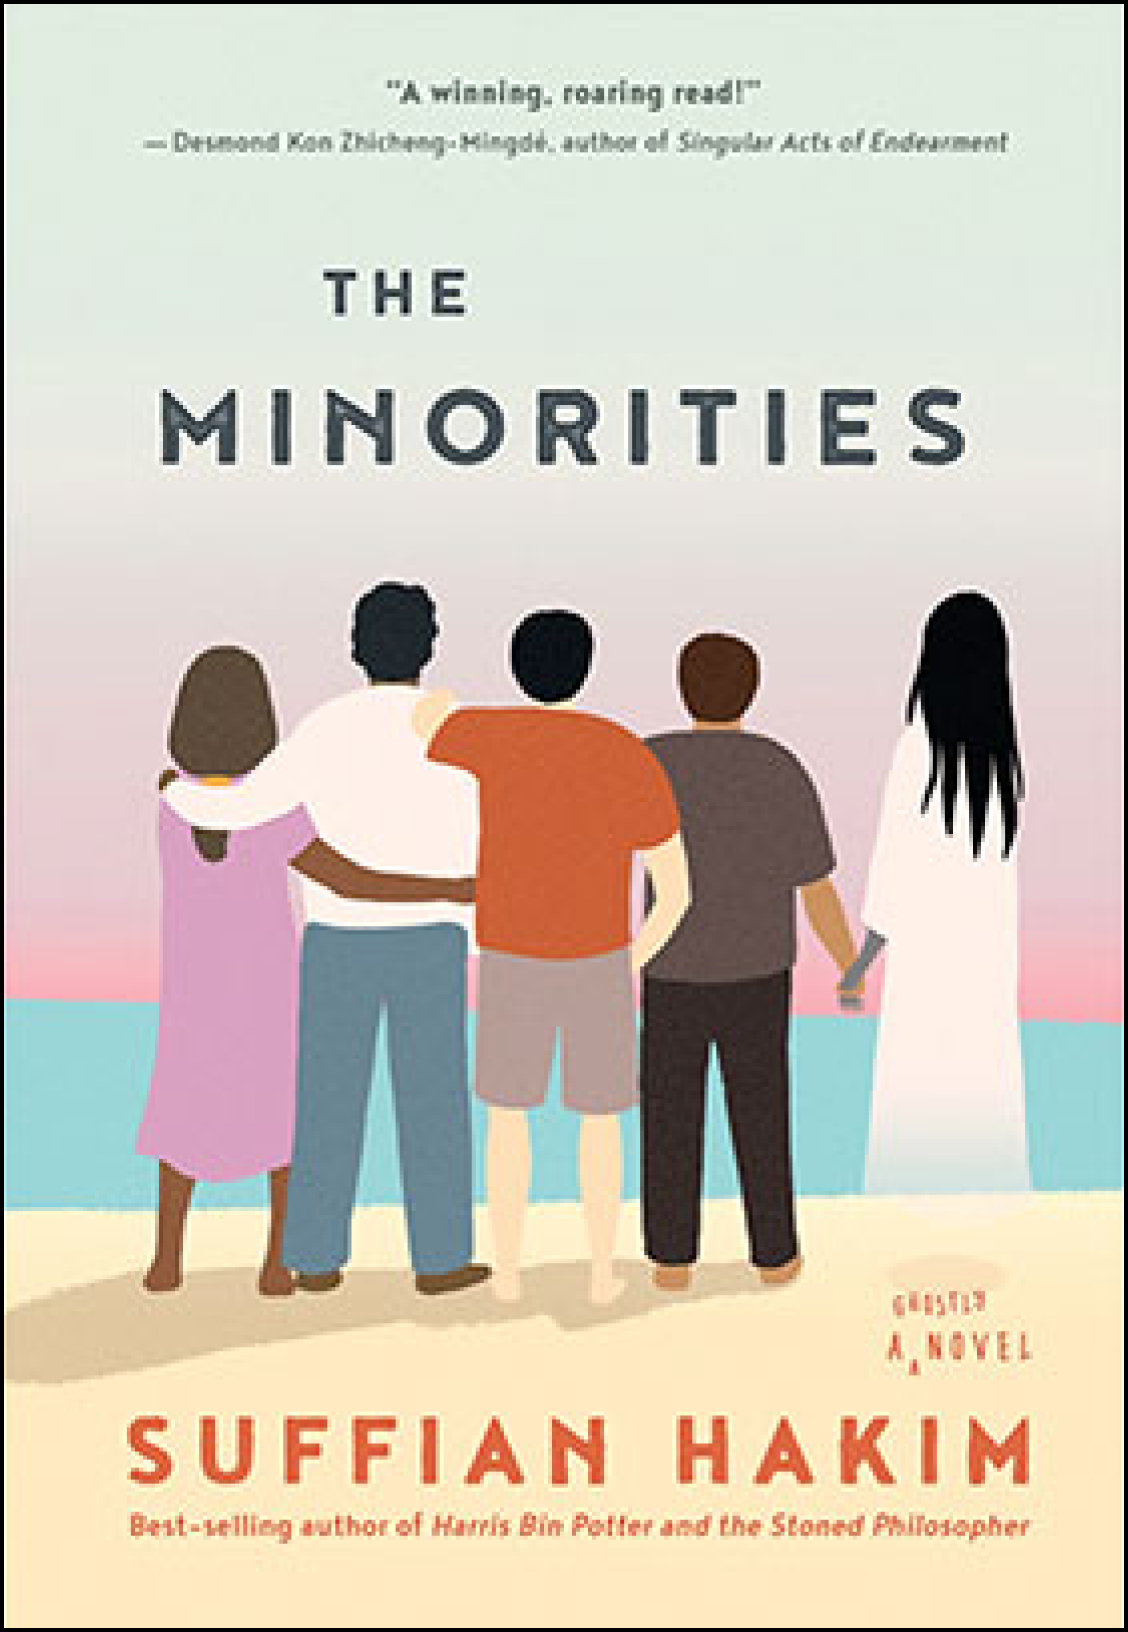 The Minorities